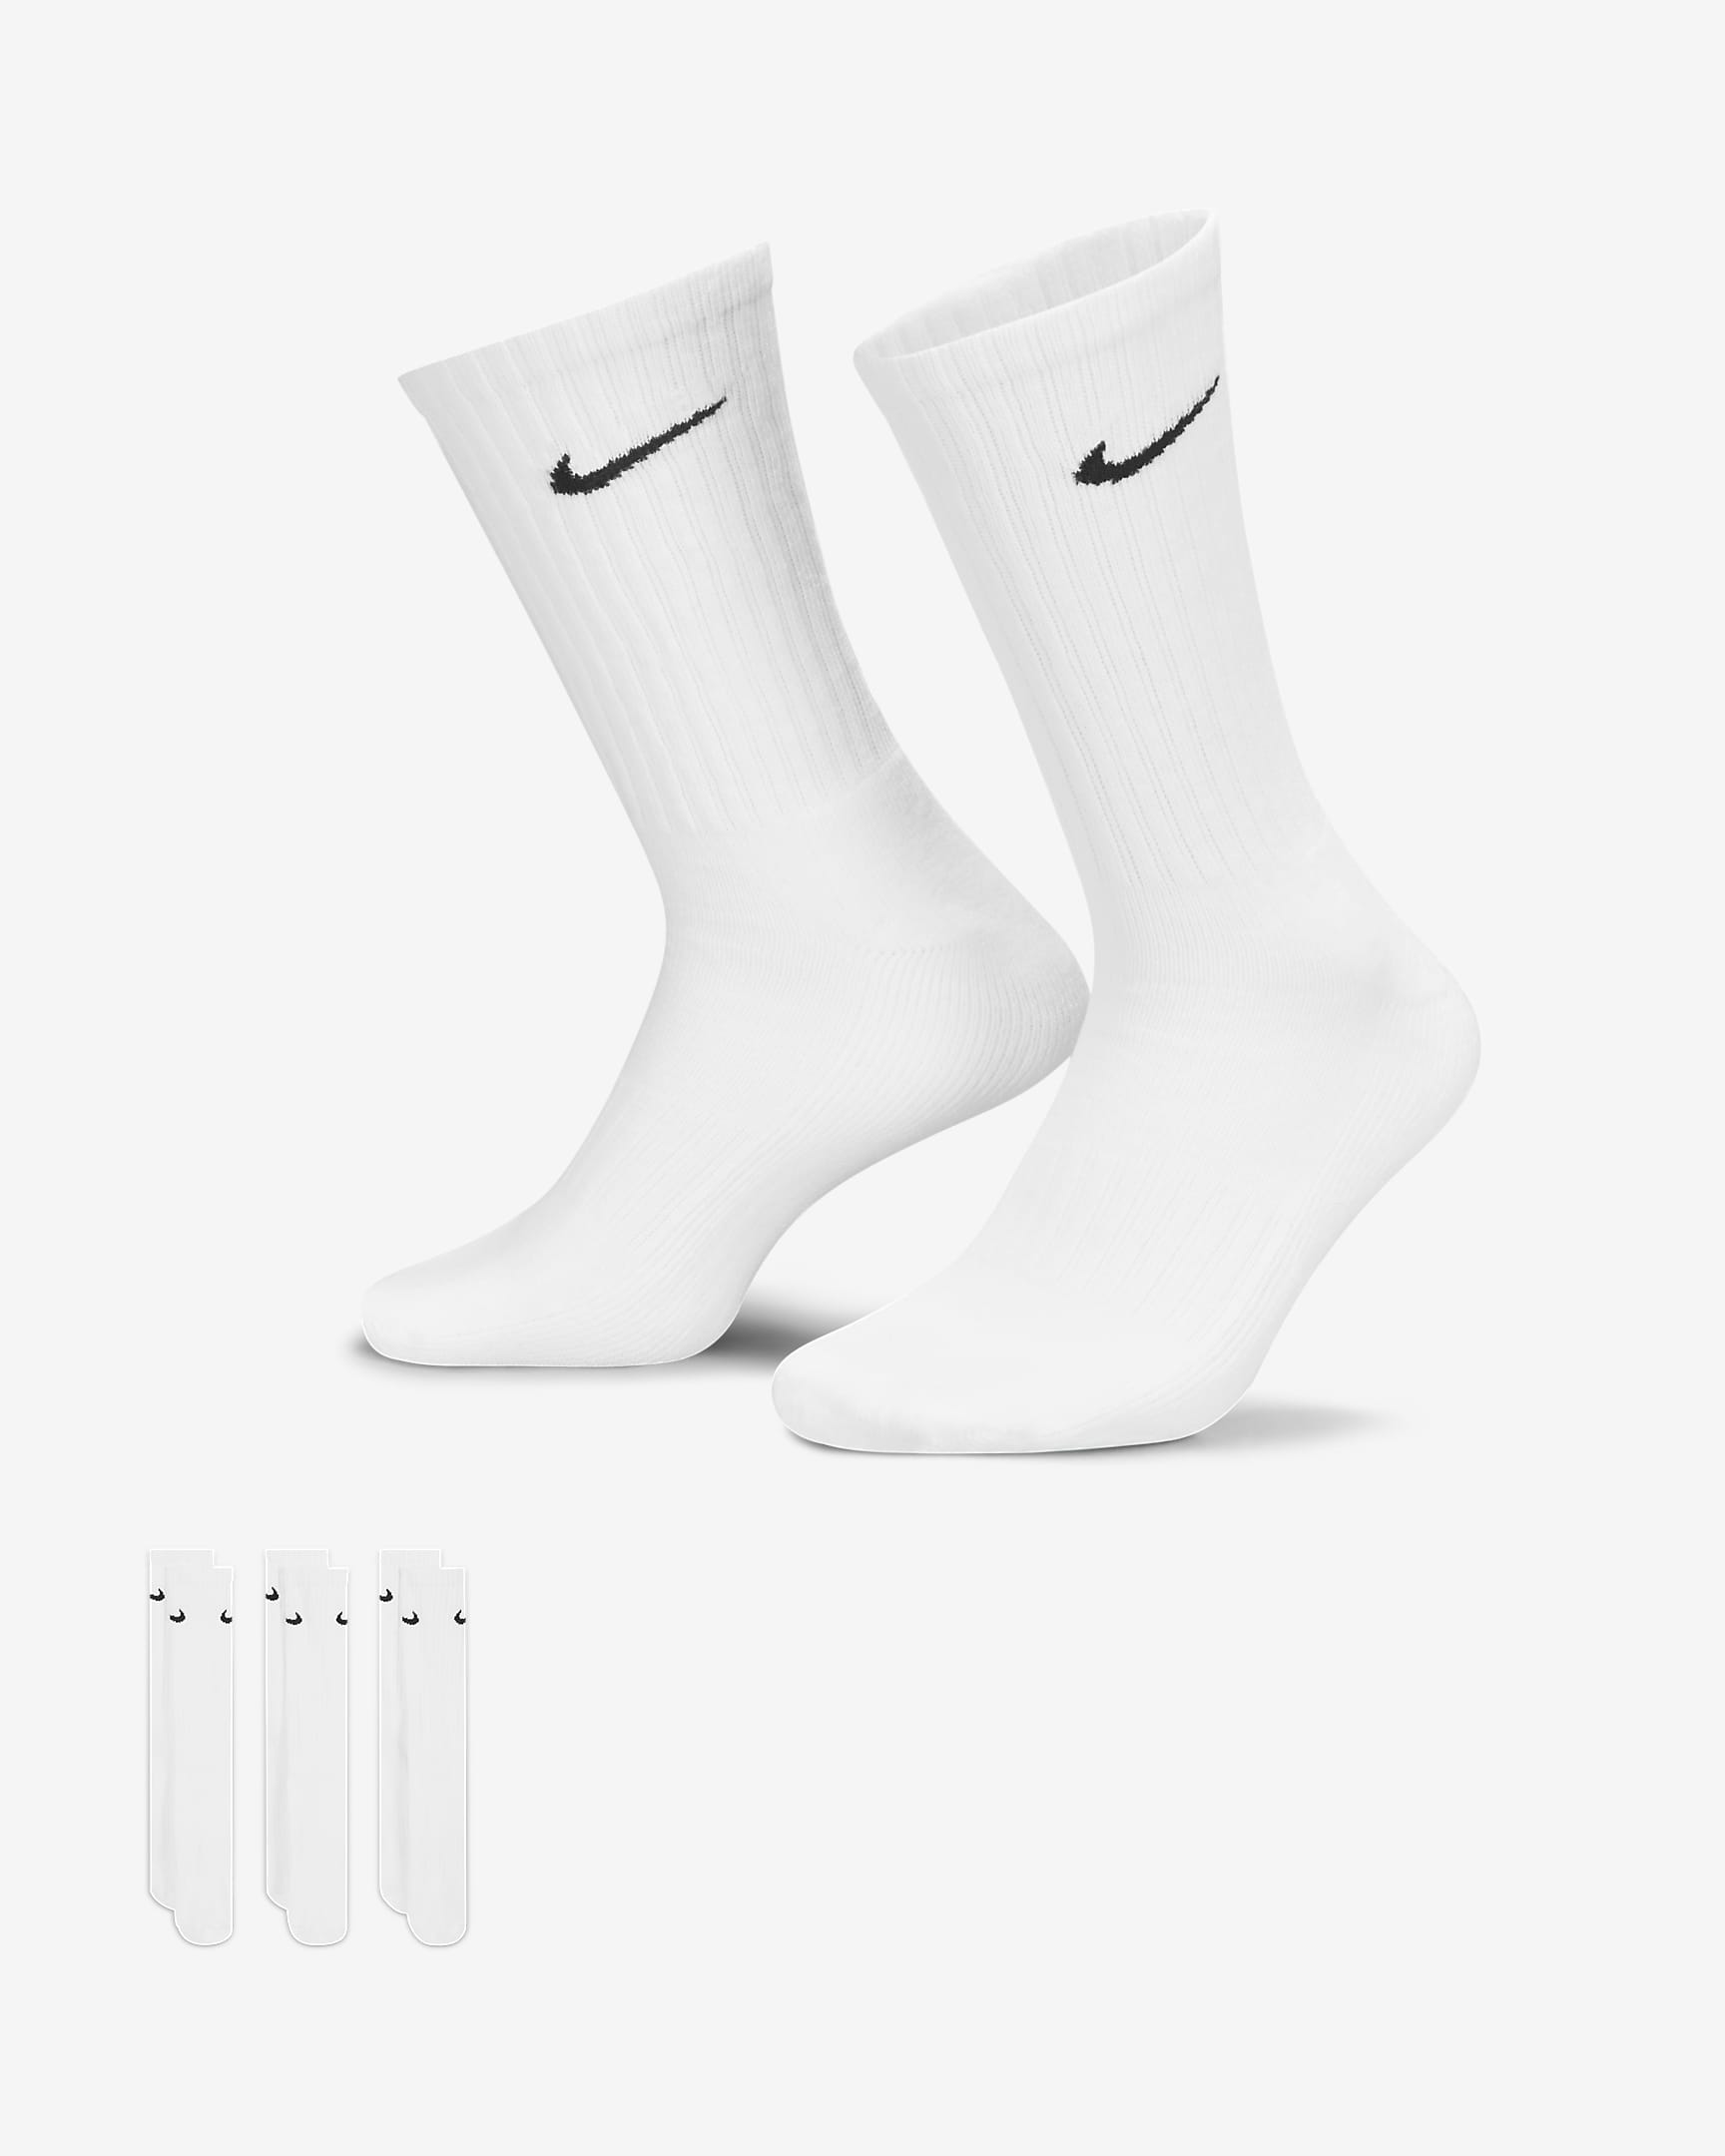 Klasyczne skarpety treningowe Nike Cushioned (3 pary) - Biel/Czerń